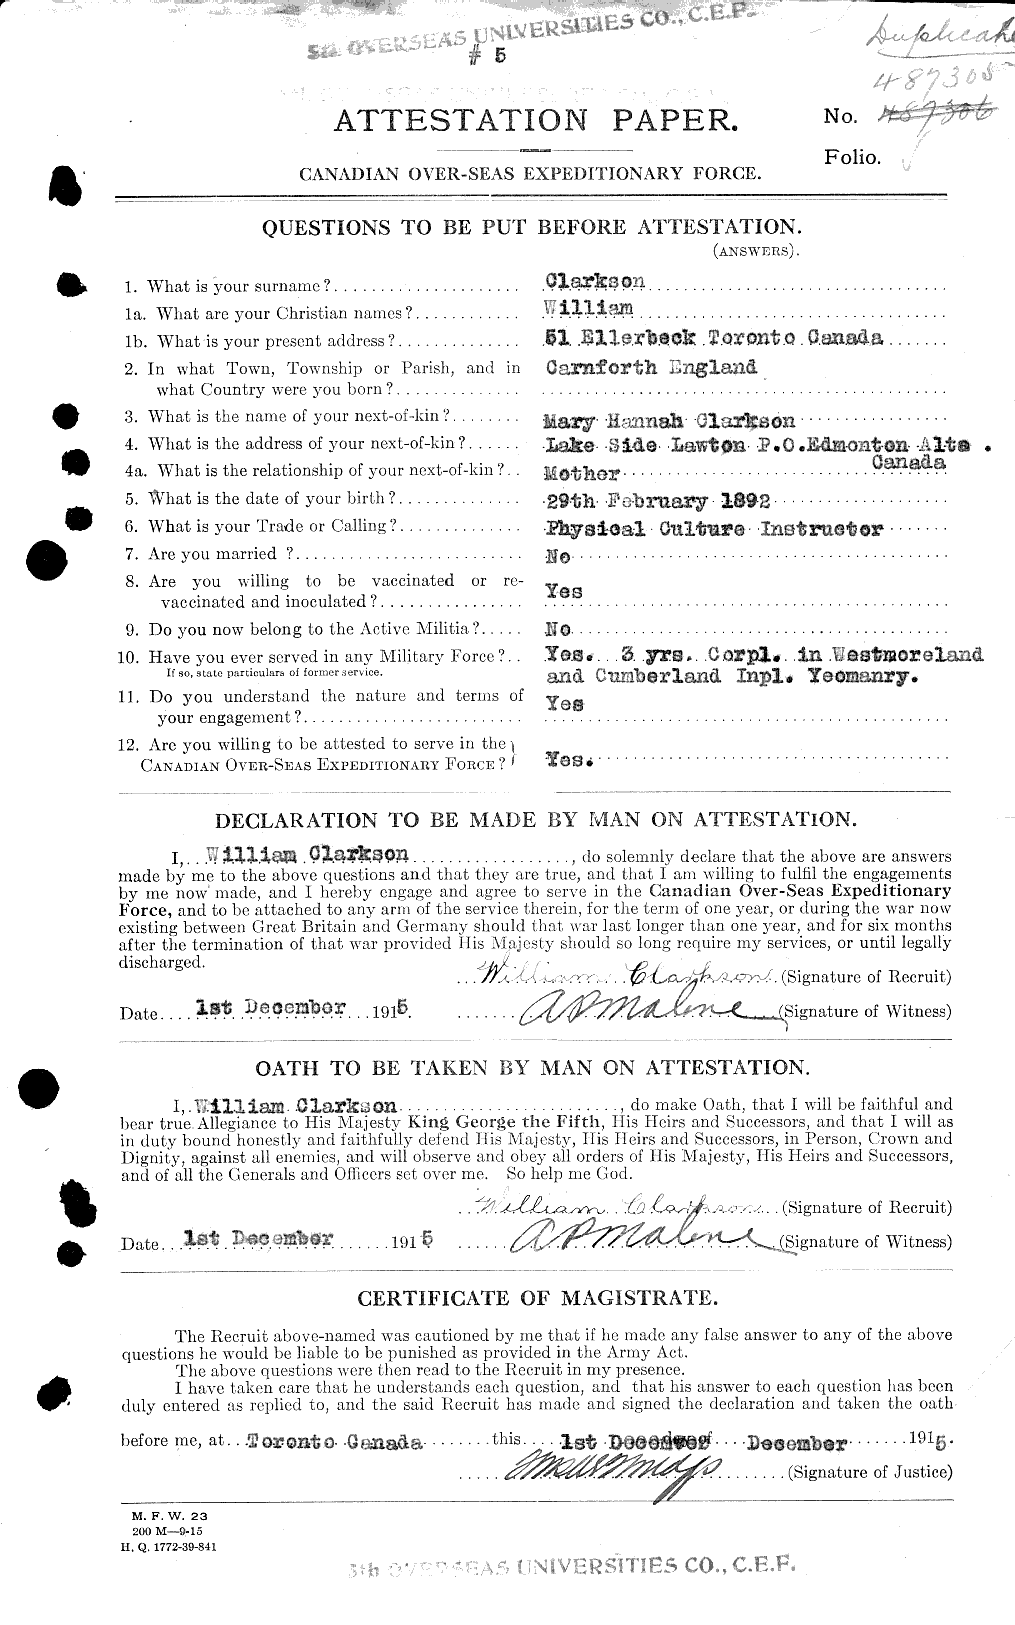 Dossiers du Personnel de la Première Guerre mondiale - CEC 019018a